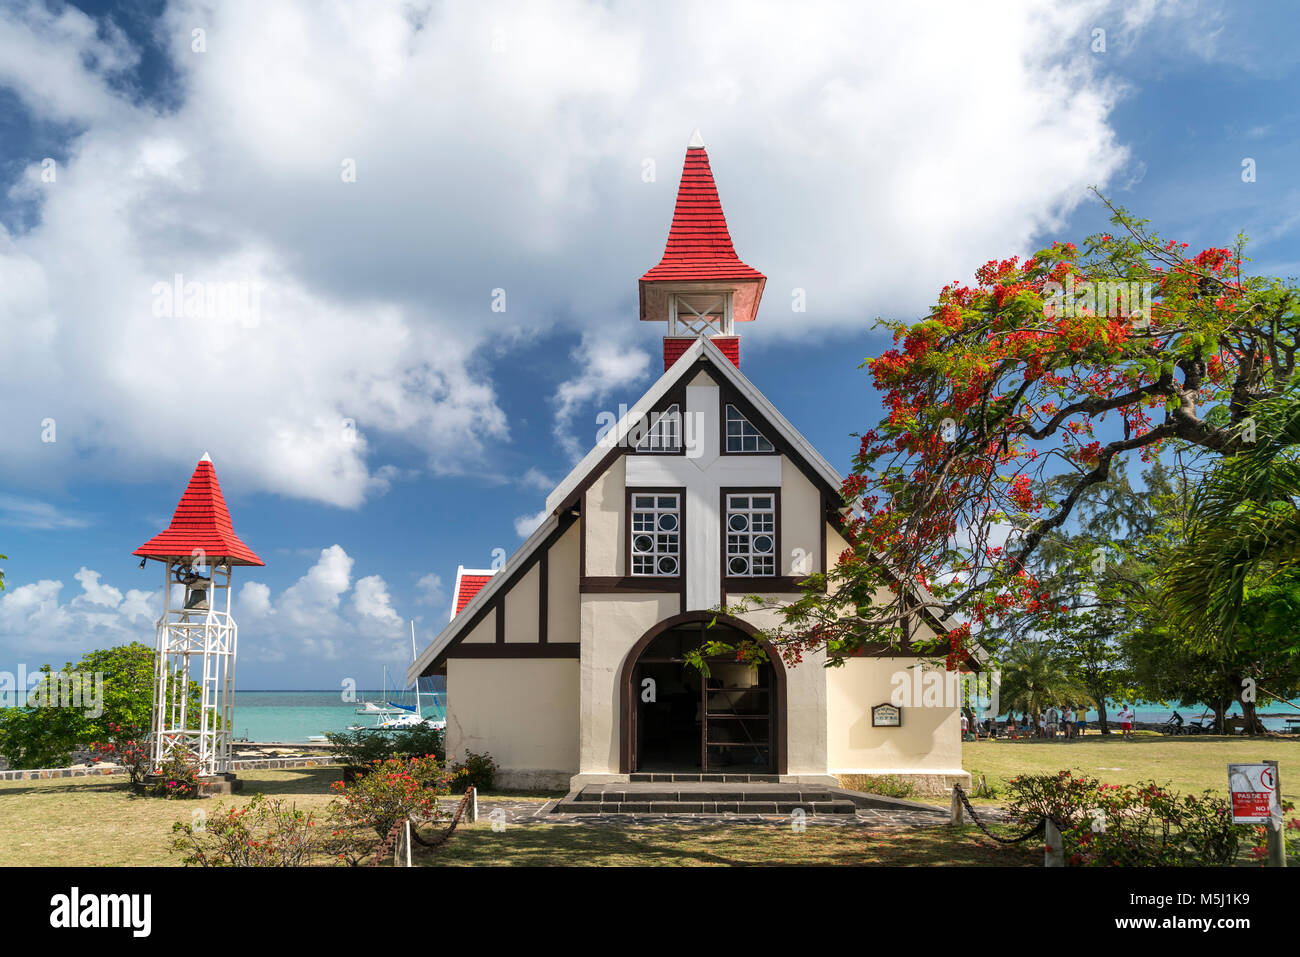 Kapelle Chapelle Notre-Dame-Auxiliatrice  am Cap Malheureux, Riviere du Rempart  Mauritius, Afrika,  | chapel Notre Dame Auxiliatrice at Cap Malheureu Stock Photo